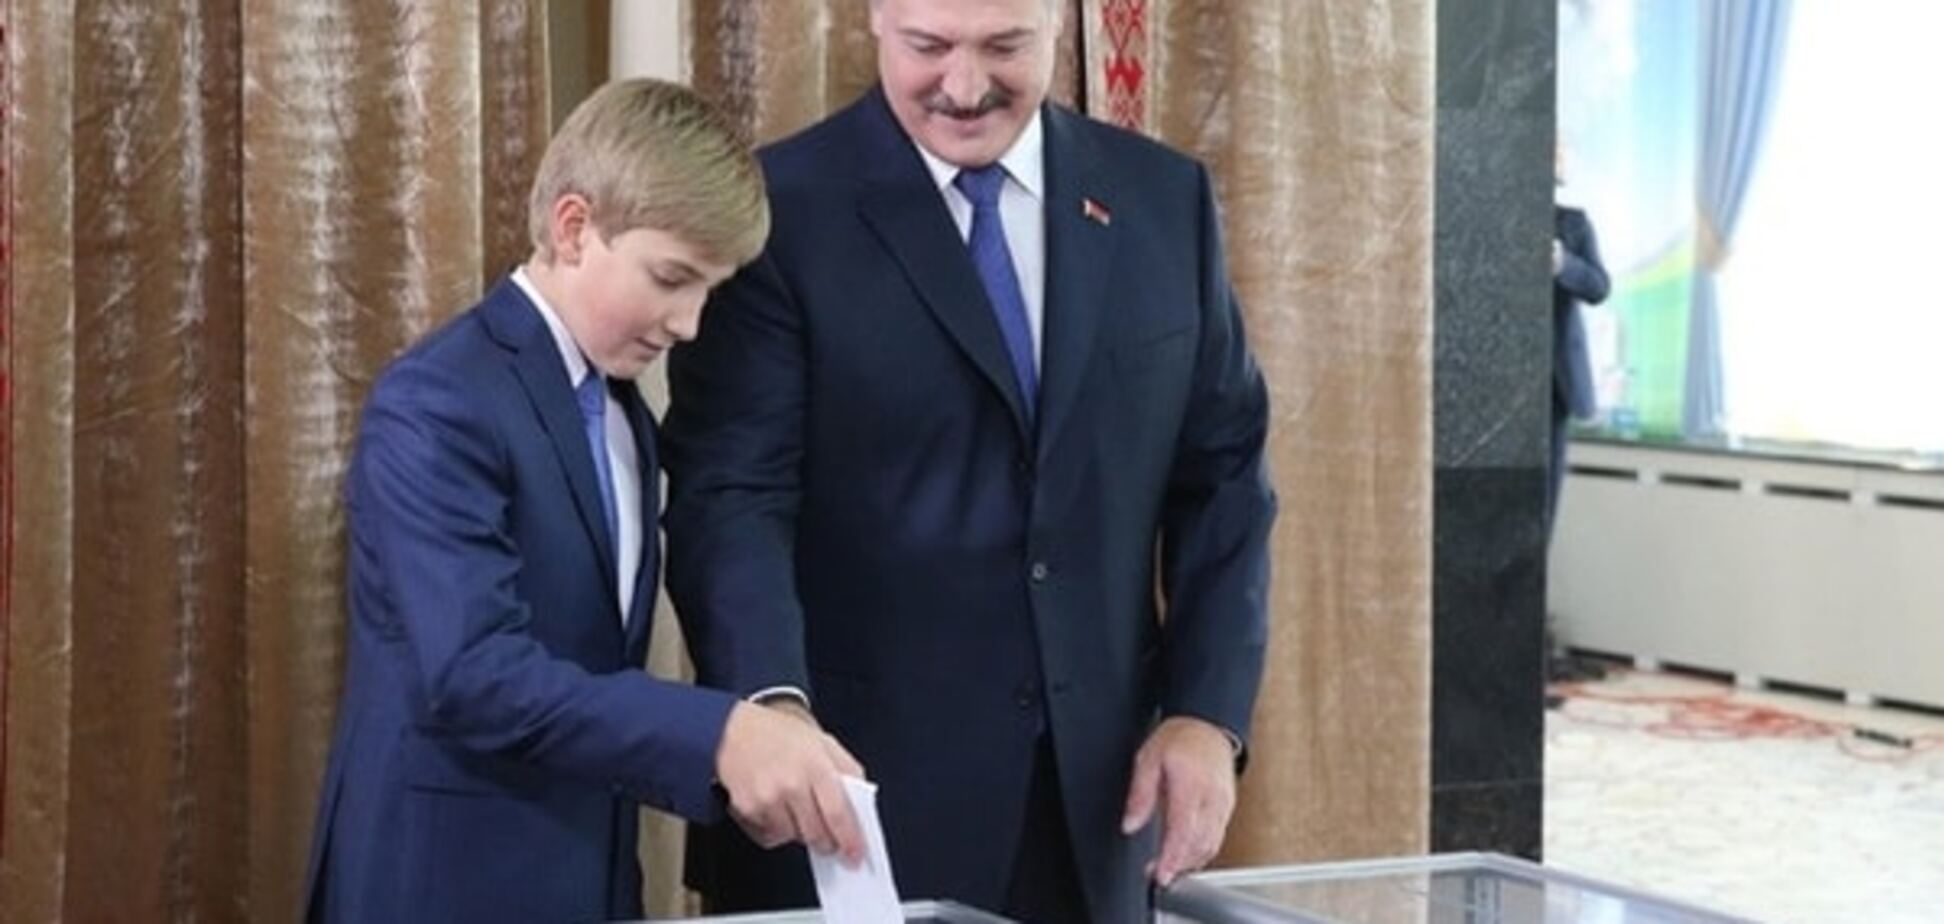 Вибори Лукашенка в Білорусі: проголосувала майже половина громадян. Фото з дільниць